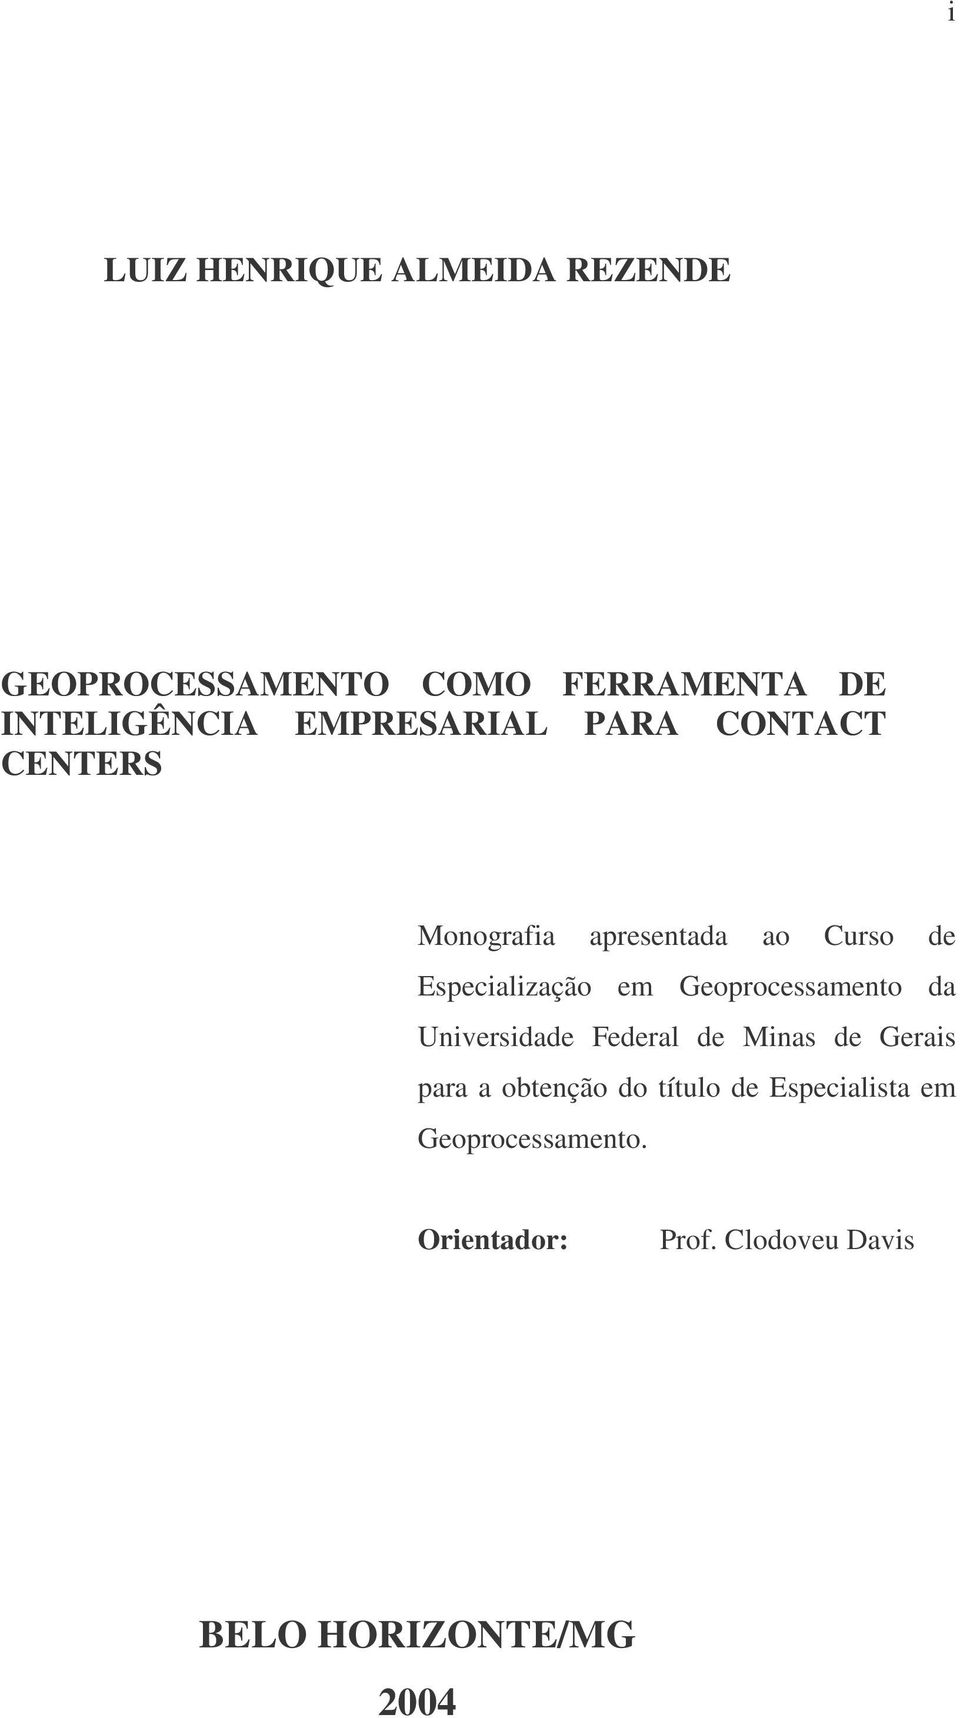 Geoprocessamento da Universidade Federal de Minas de Gerais para a obtenção do título